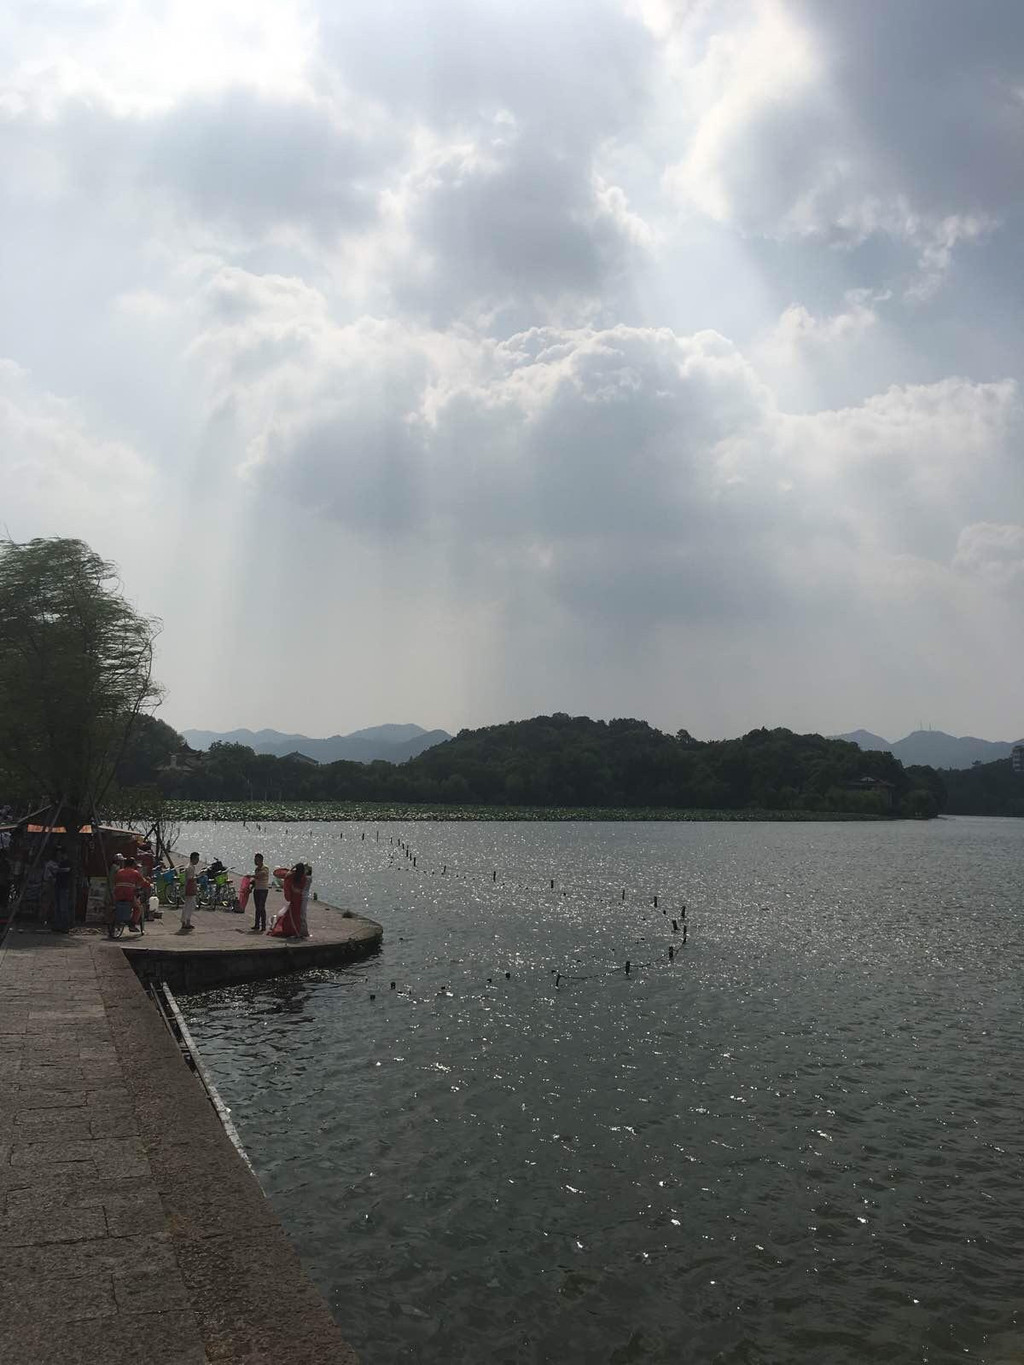 【携程攻略】杭州苏堤景点,苏堤春晓是杭州西湖最出名的景点了吧，沿途有花港观鱼、曲院风荷等好…